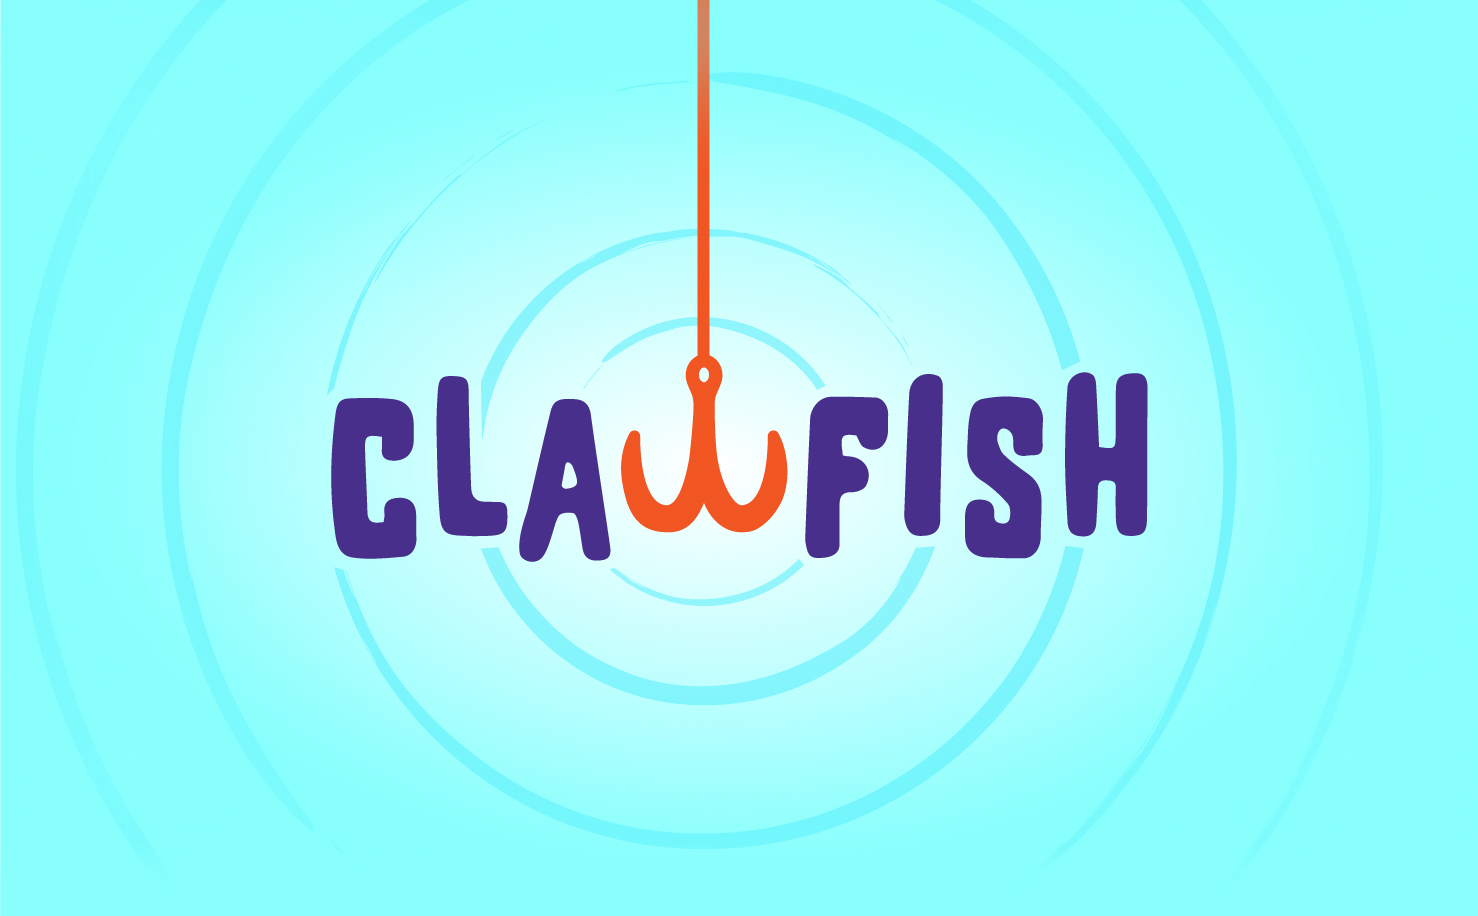 clawfish beignet